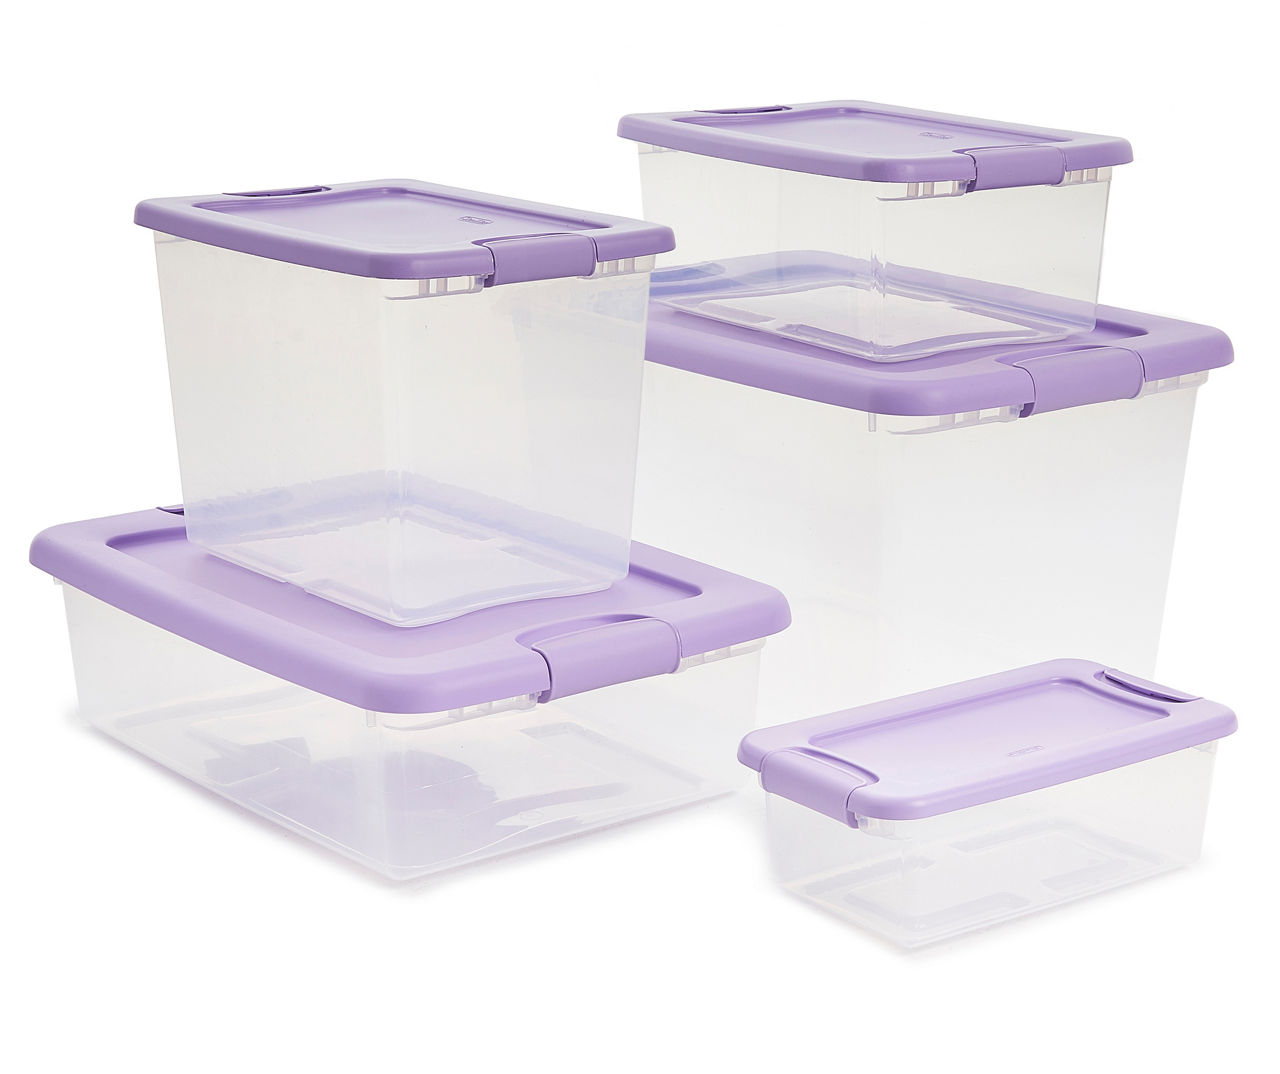 Sterilite 64 Quart Latching Plastic Storage Container, Purple and